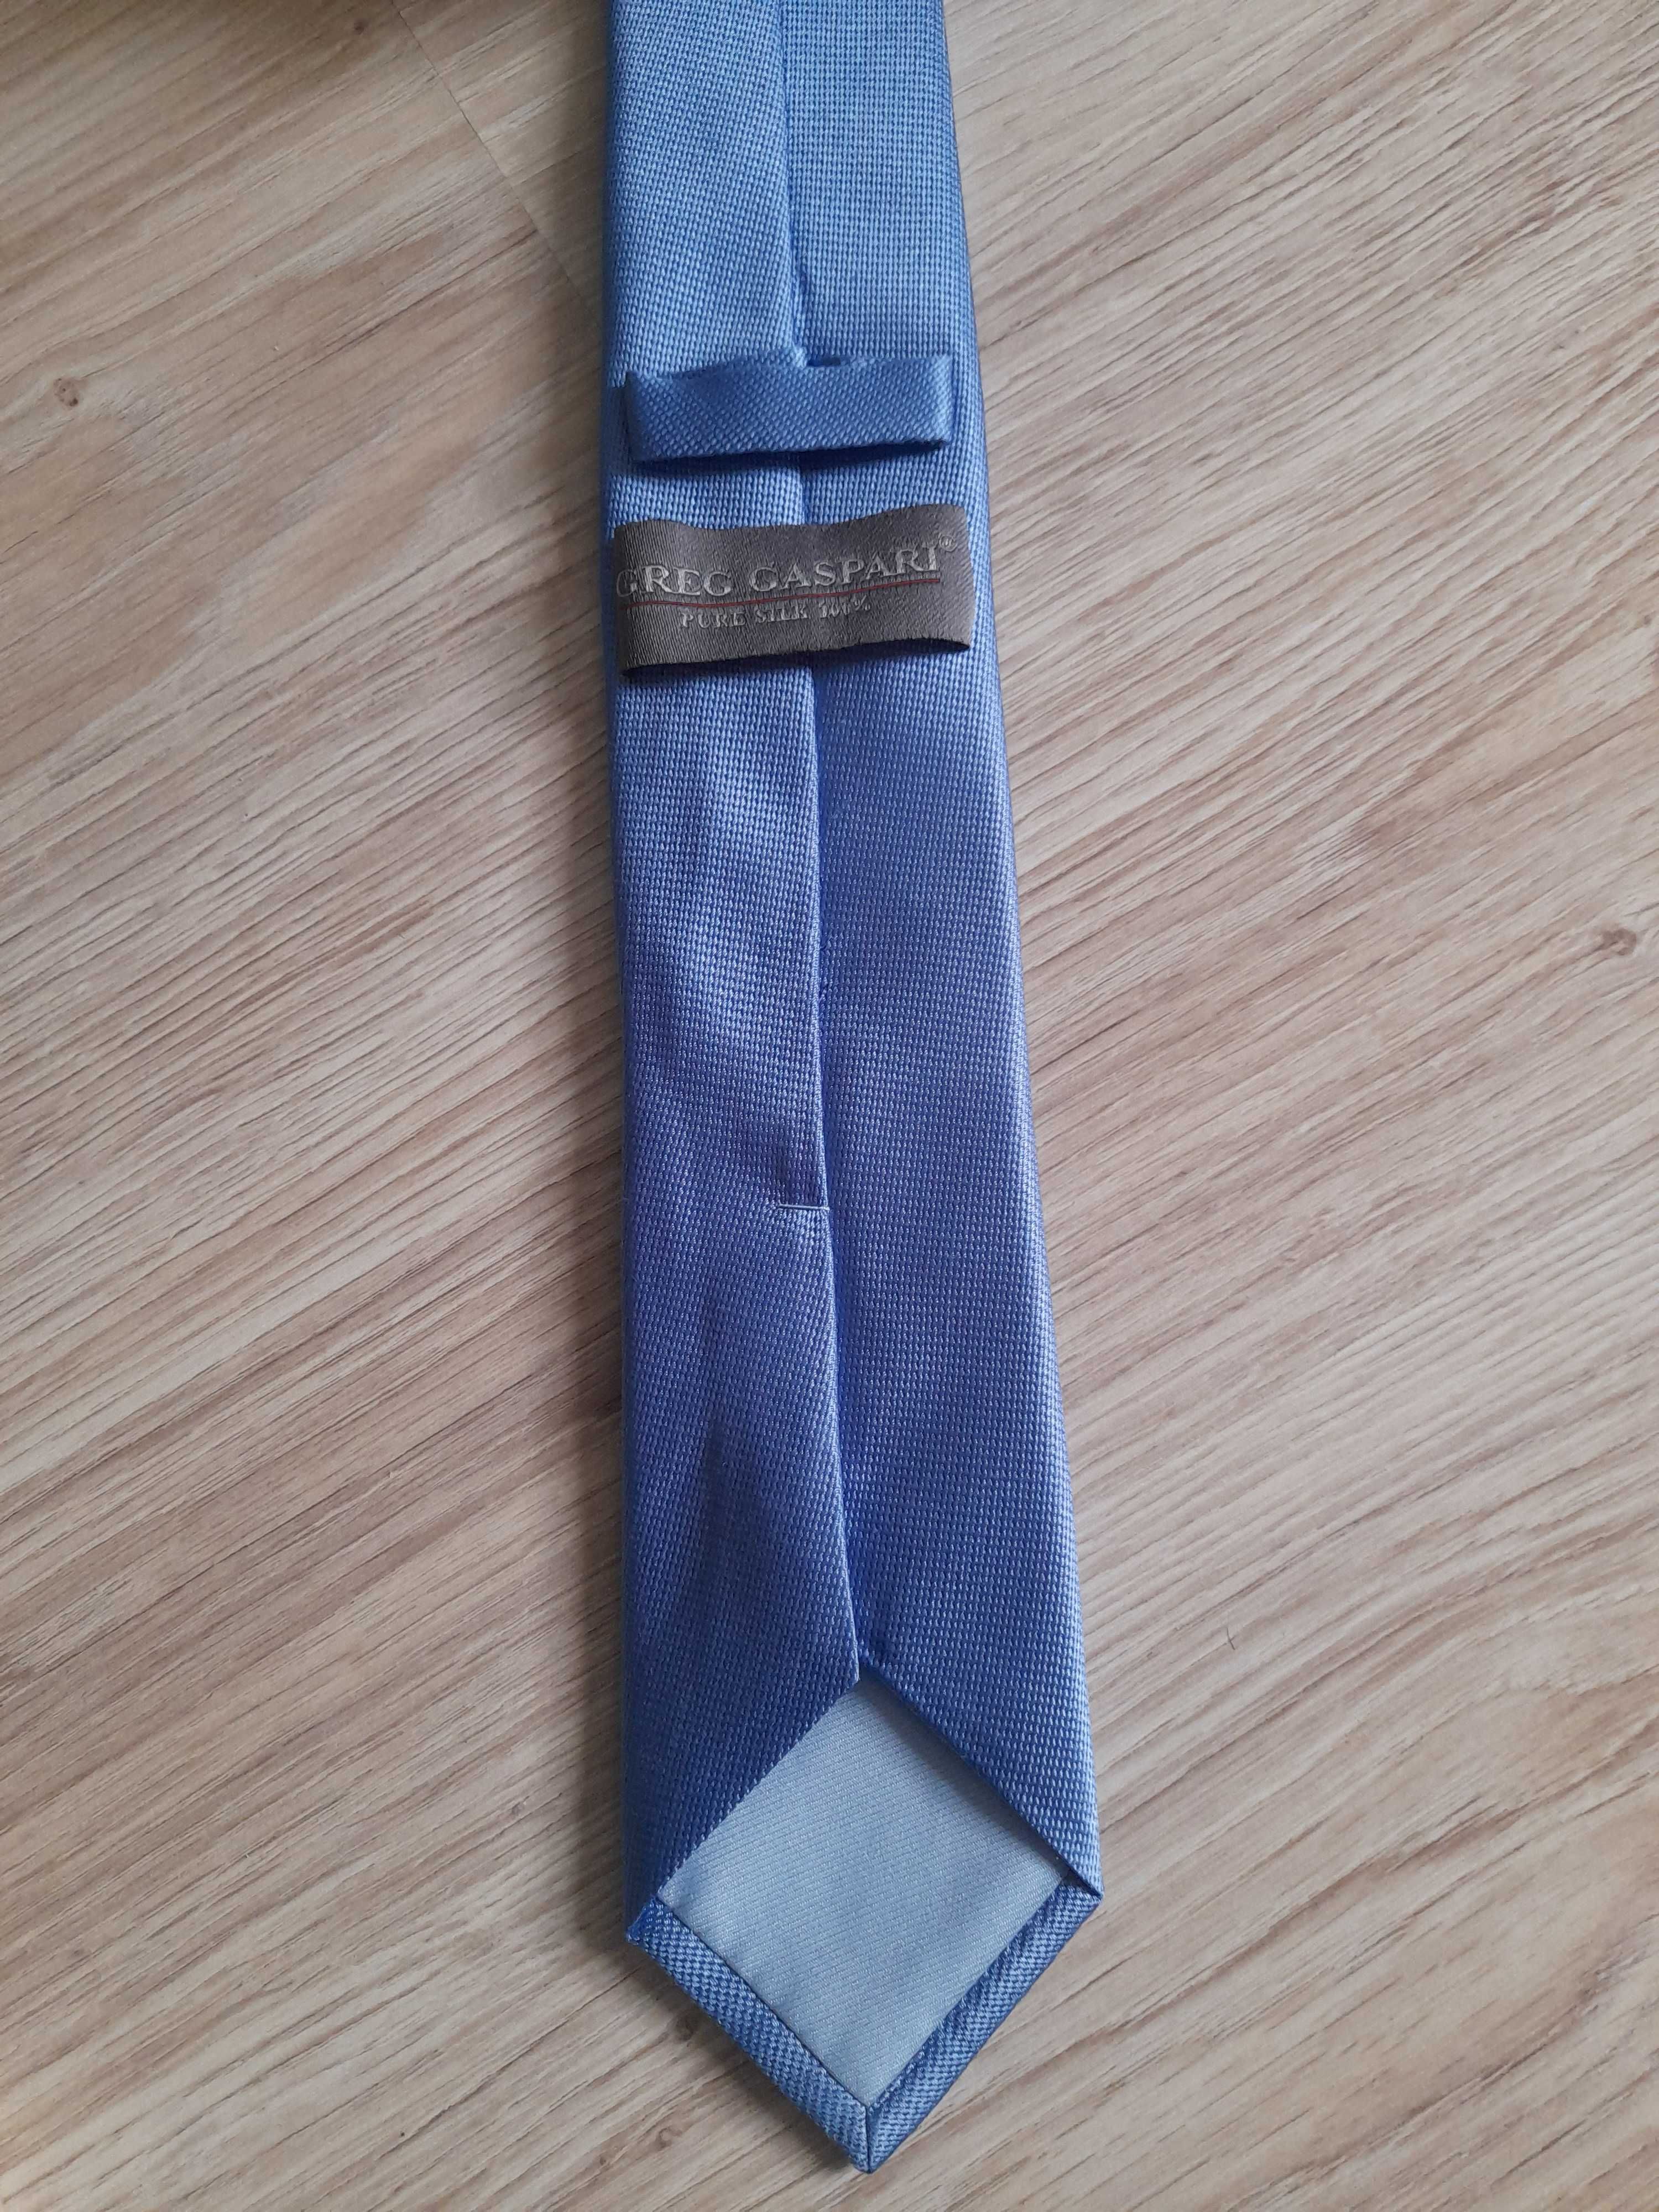 Krawat Greg Gaspari Jasno niebieski 100% jedwab